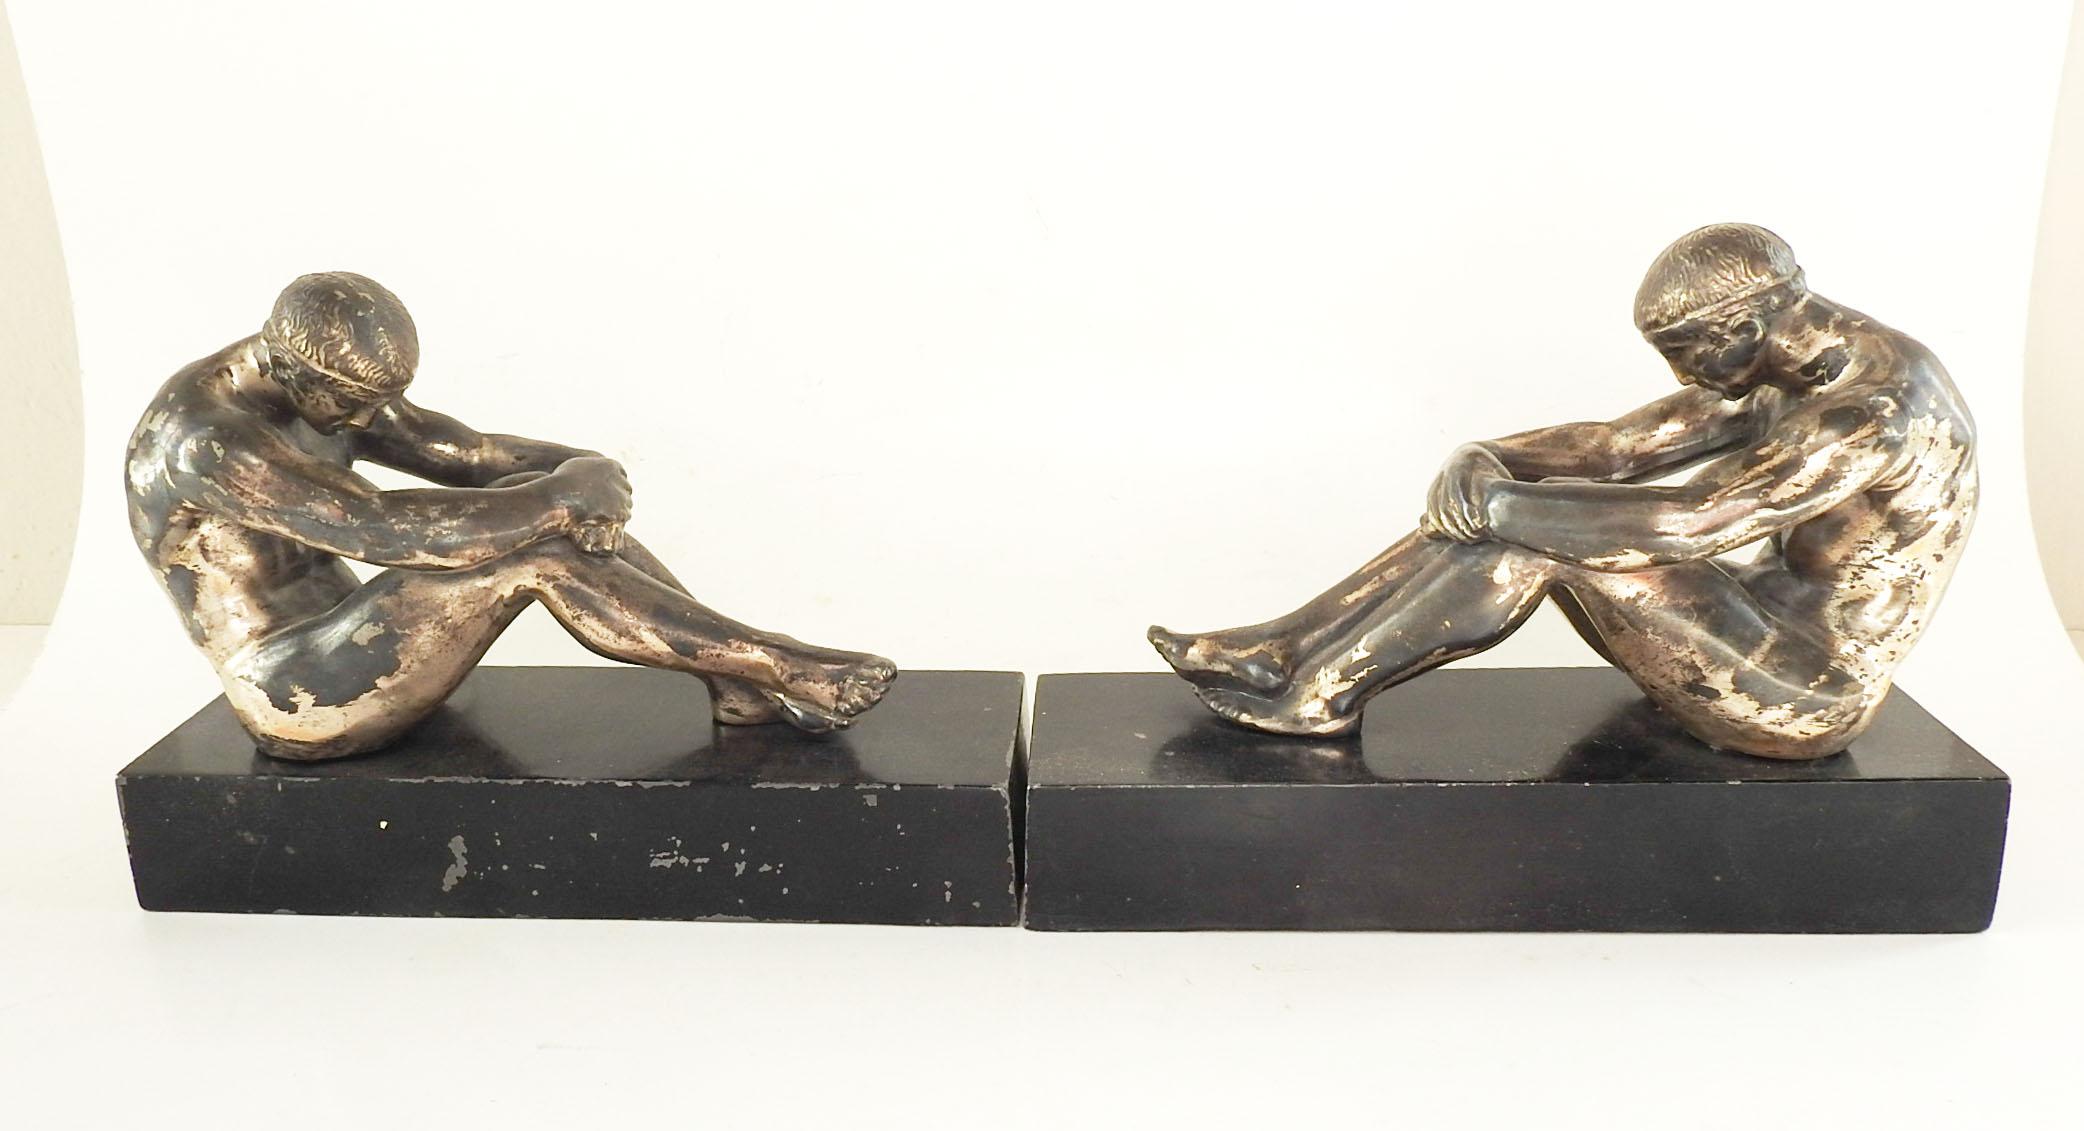 Paire de serre-livres en métal Ronson Art, datant des années 1920. Athlètes grecs sur socle noir avec patine argentée sur les figures. Fond en feutre avec autocollant d'origine, éraflures sur les bases.